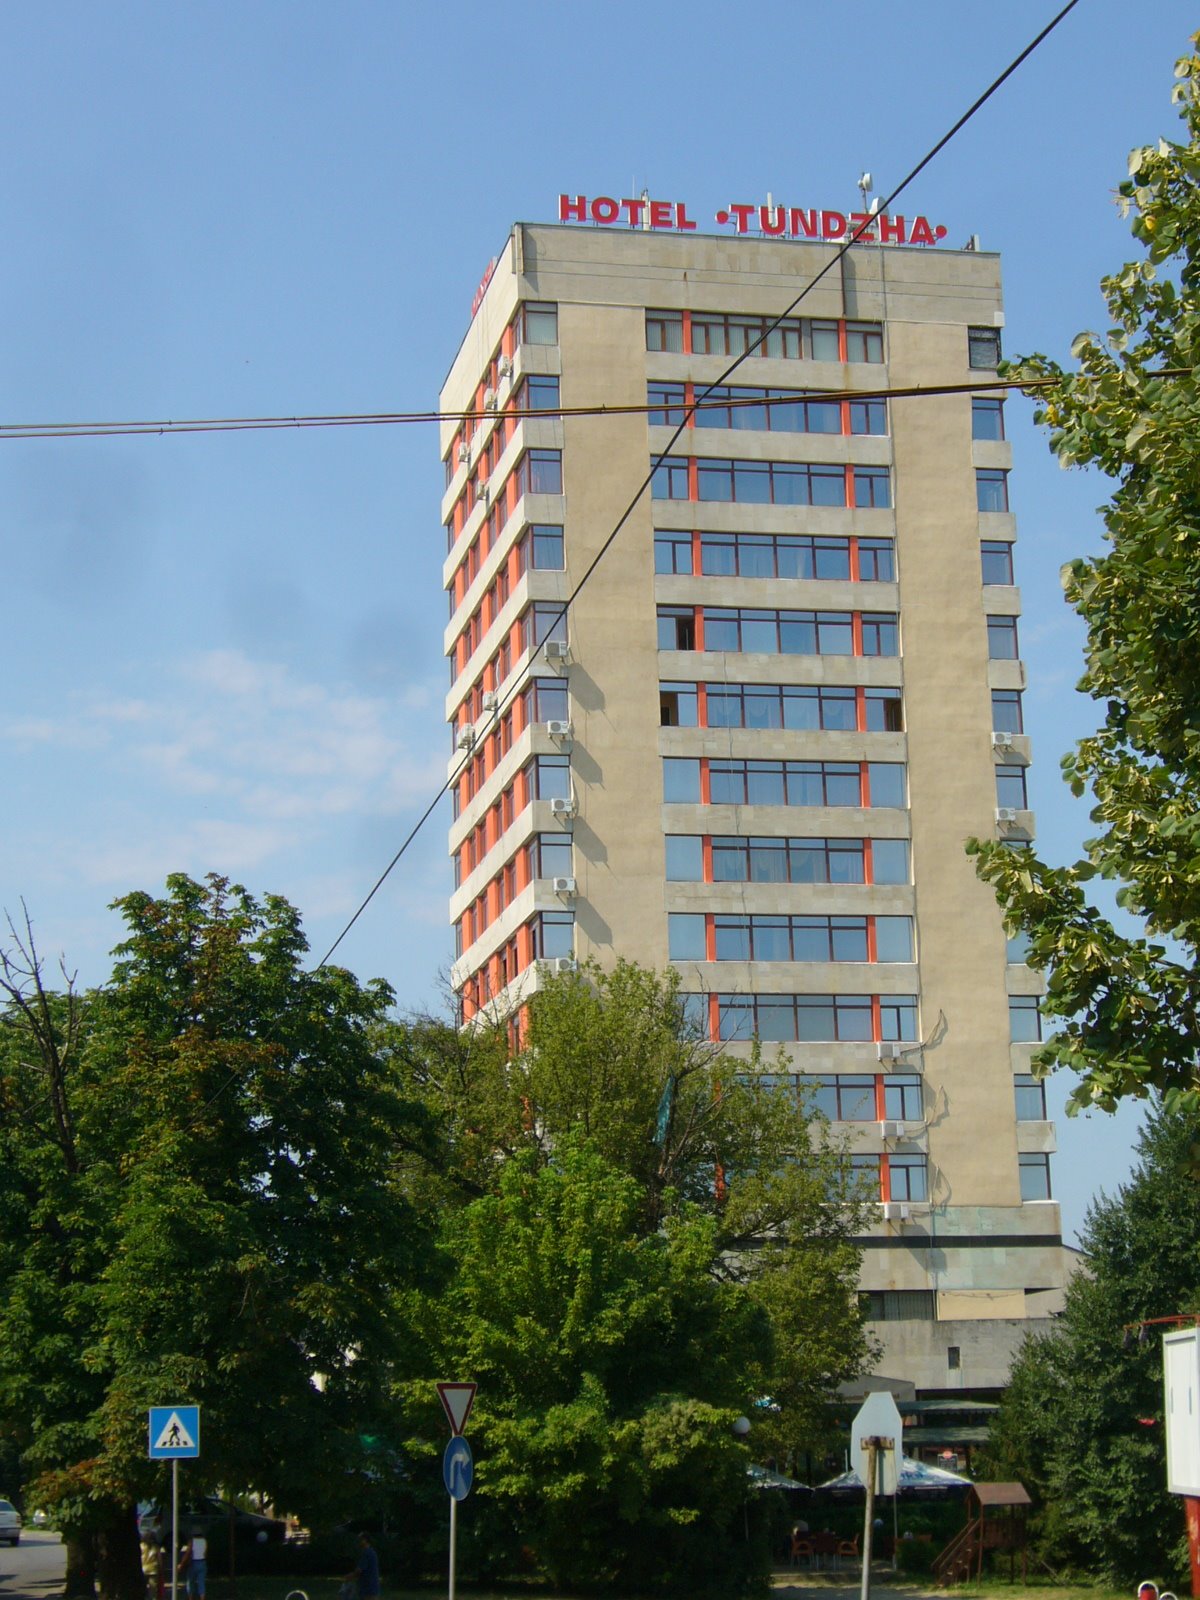 Yambol's Tundzha Hotel